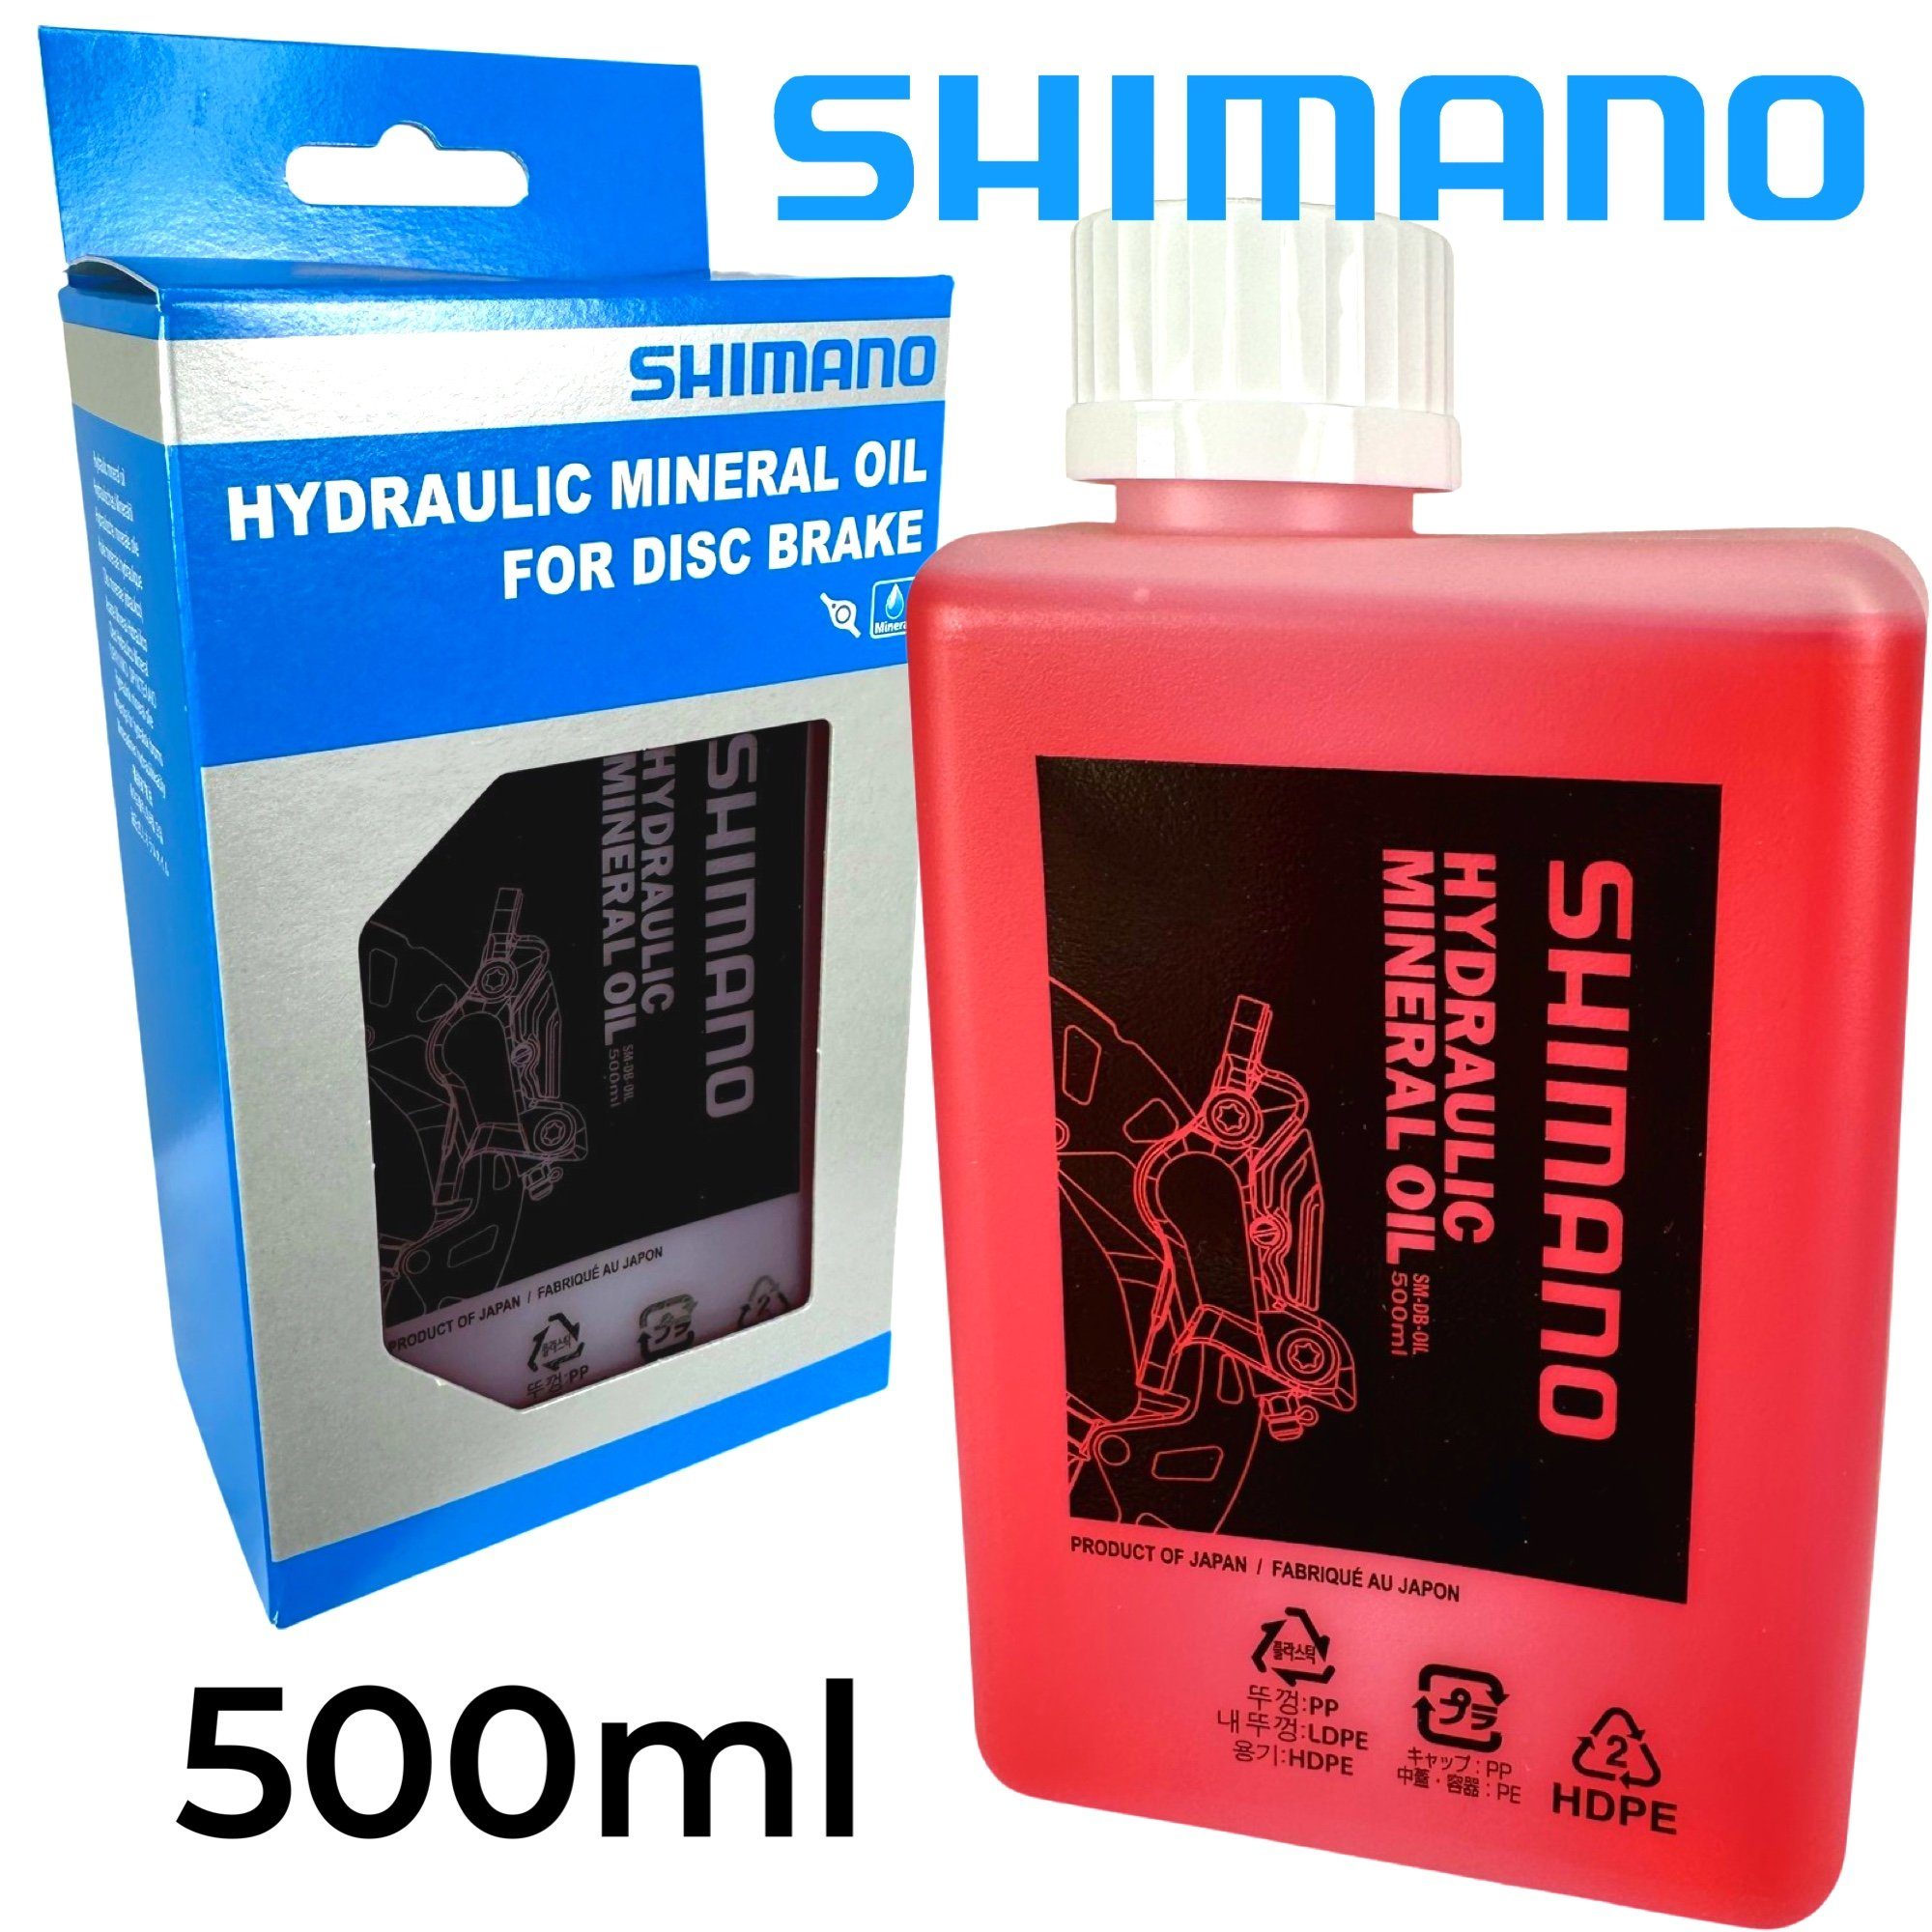 Scheibenbremsen Fahrrad-Montageständer Fahrrad 500ml Grossflasche Hydraulik Mineralöl Shimano Shimano